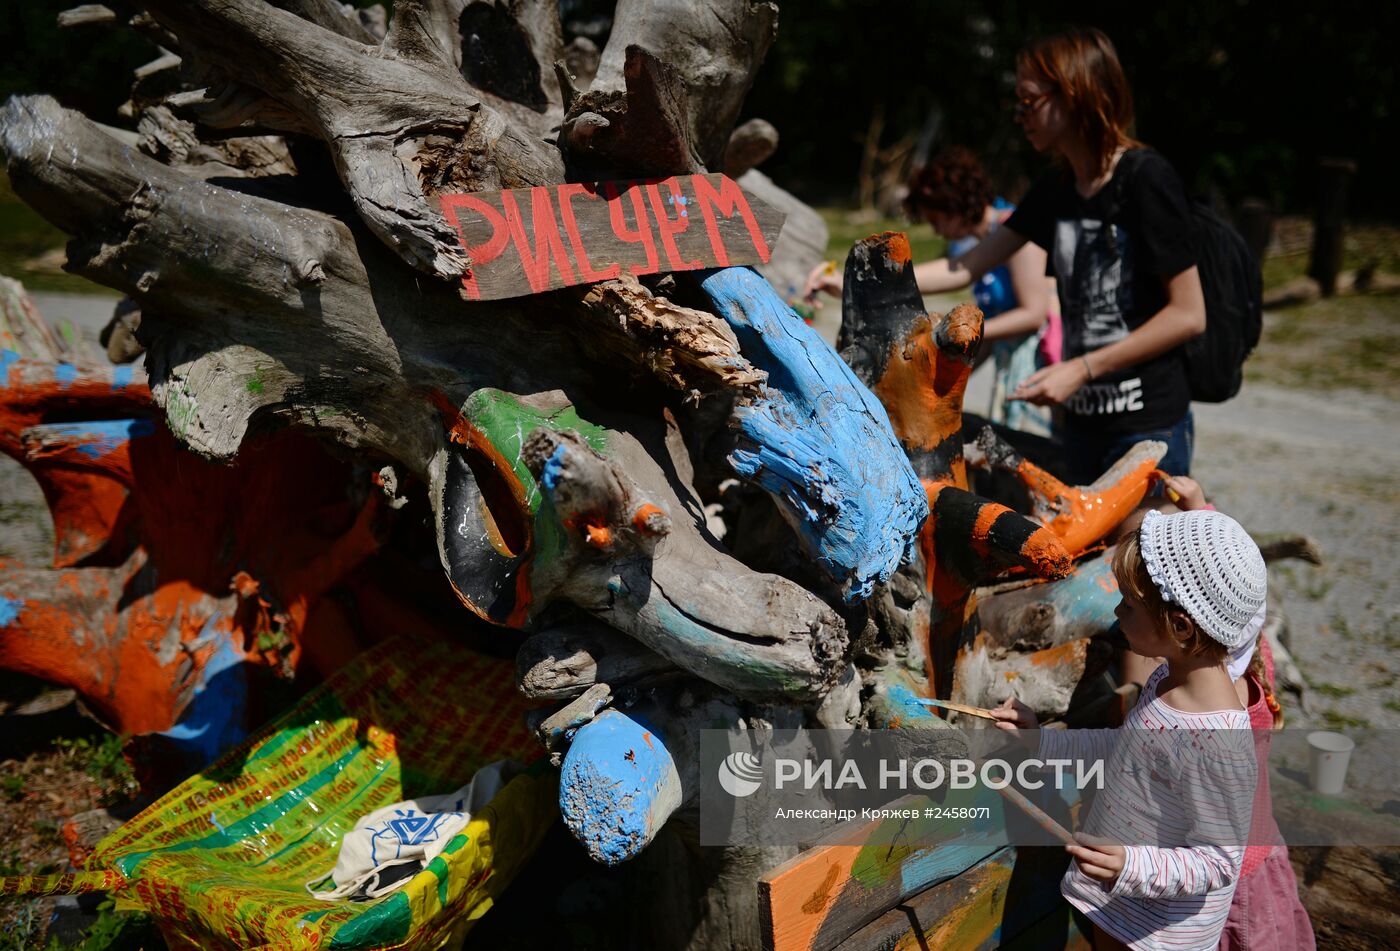 Эко-фестиваль "Елки-палки" в Новосибирске